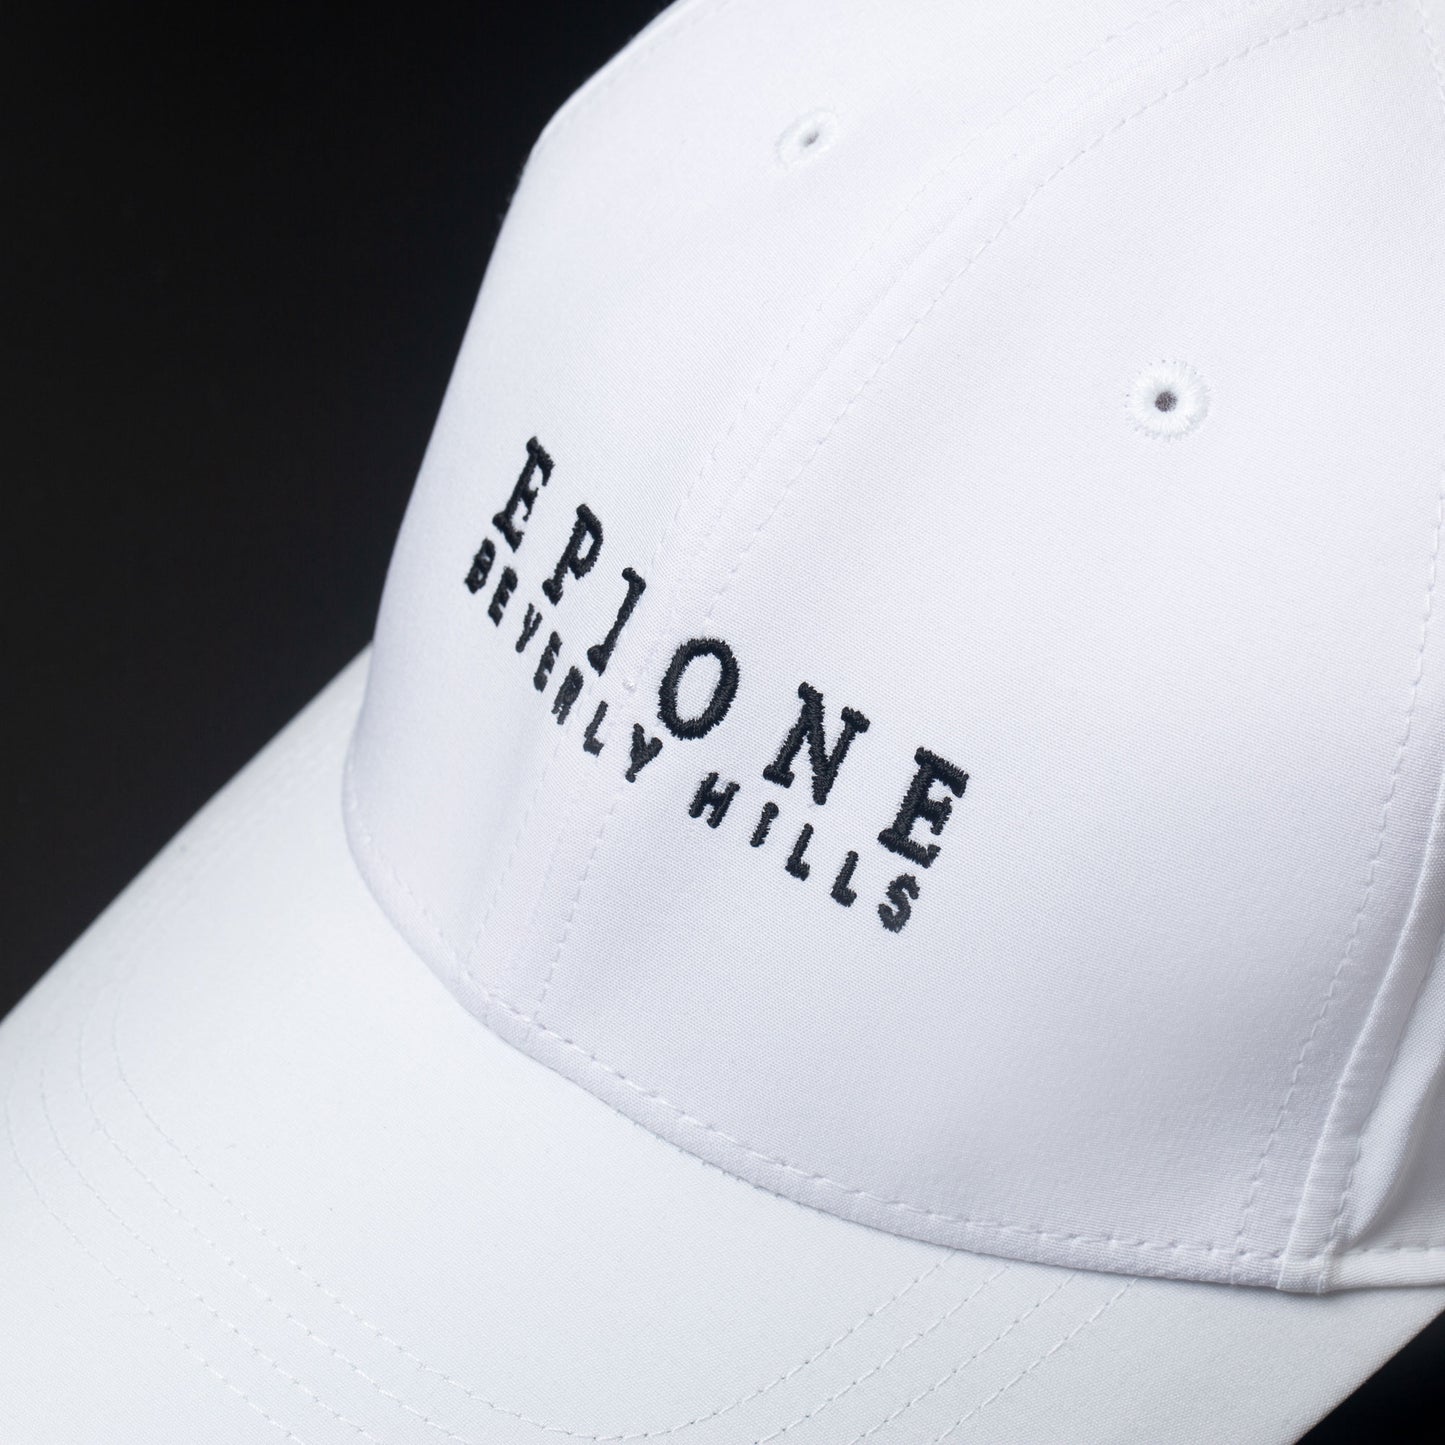 EPIONE Skin Care Golf Hat